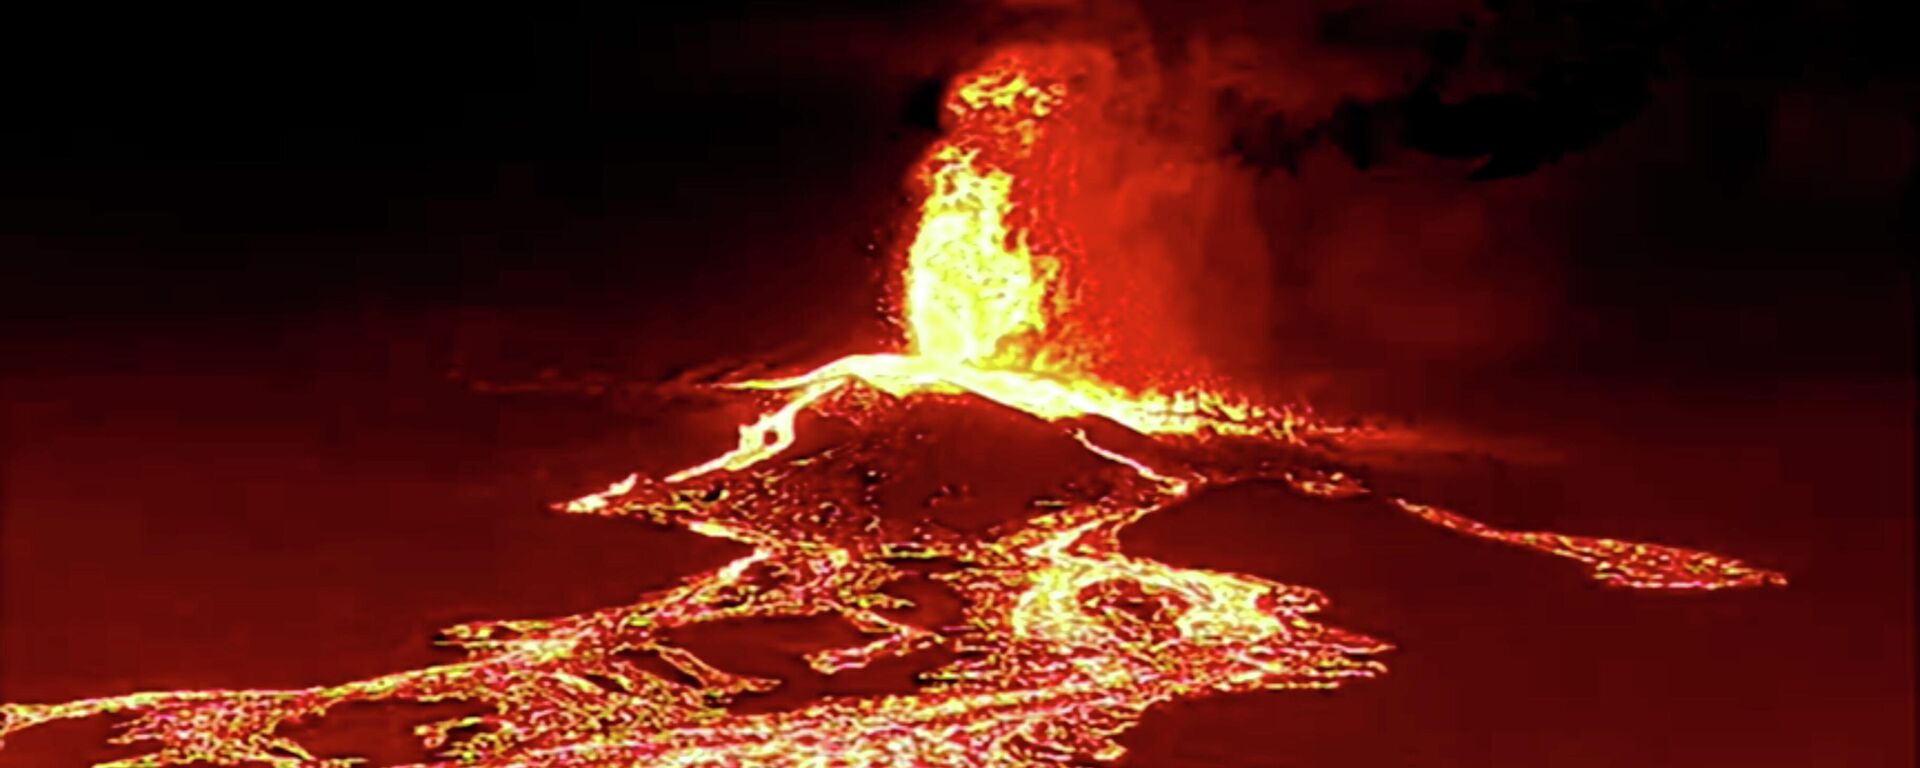 La erupción del volcán de La Palma (en las Islas Canarias) - Sputnik Mundo, 1920, 22.09.2021